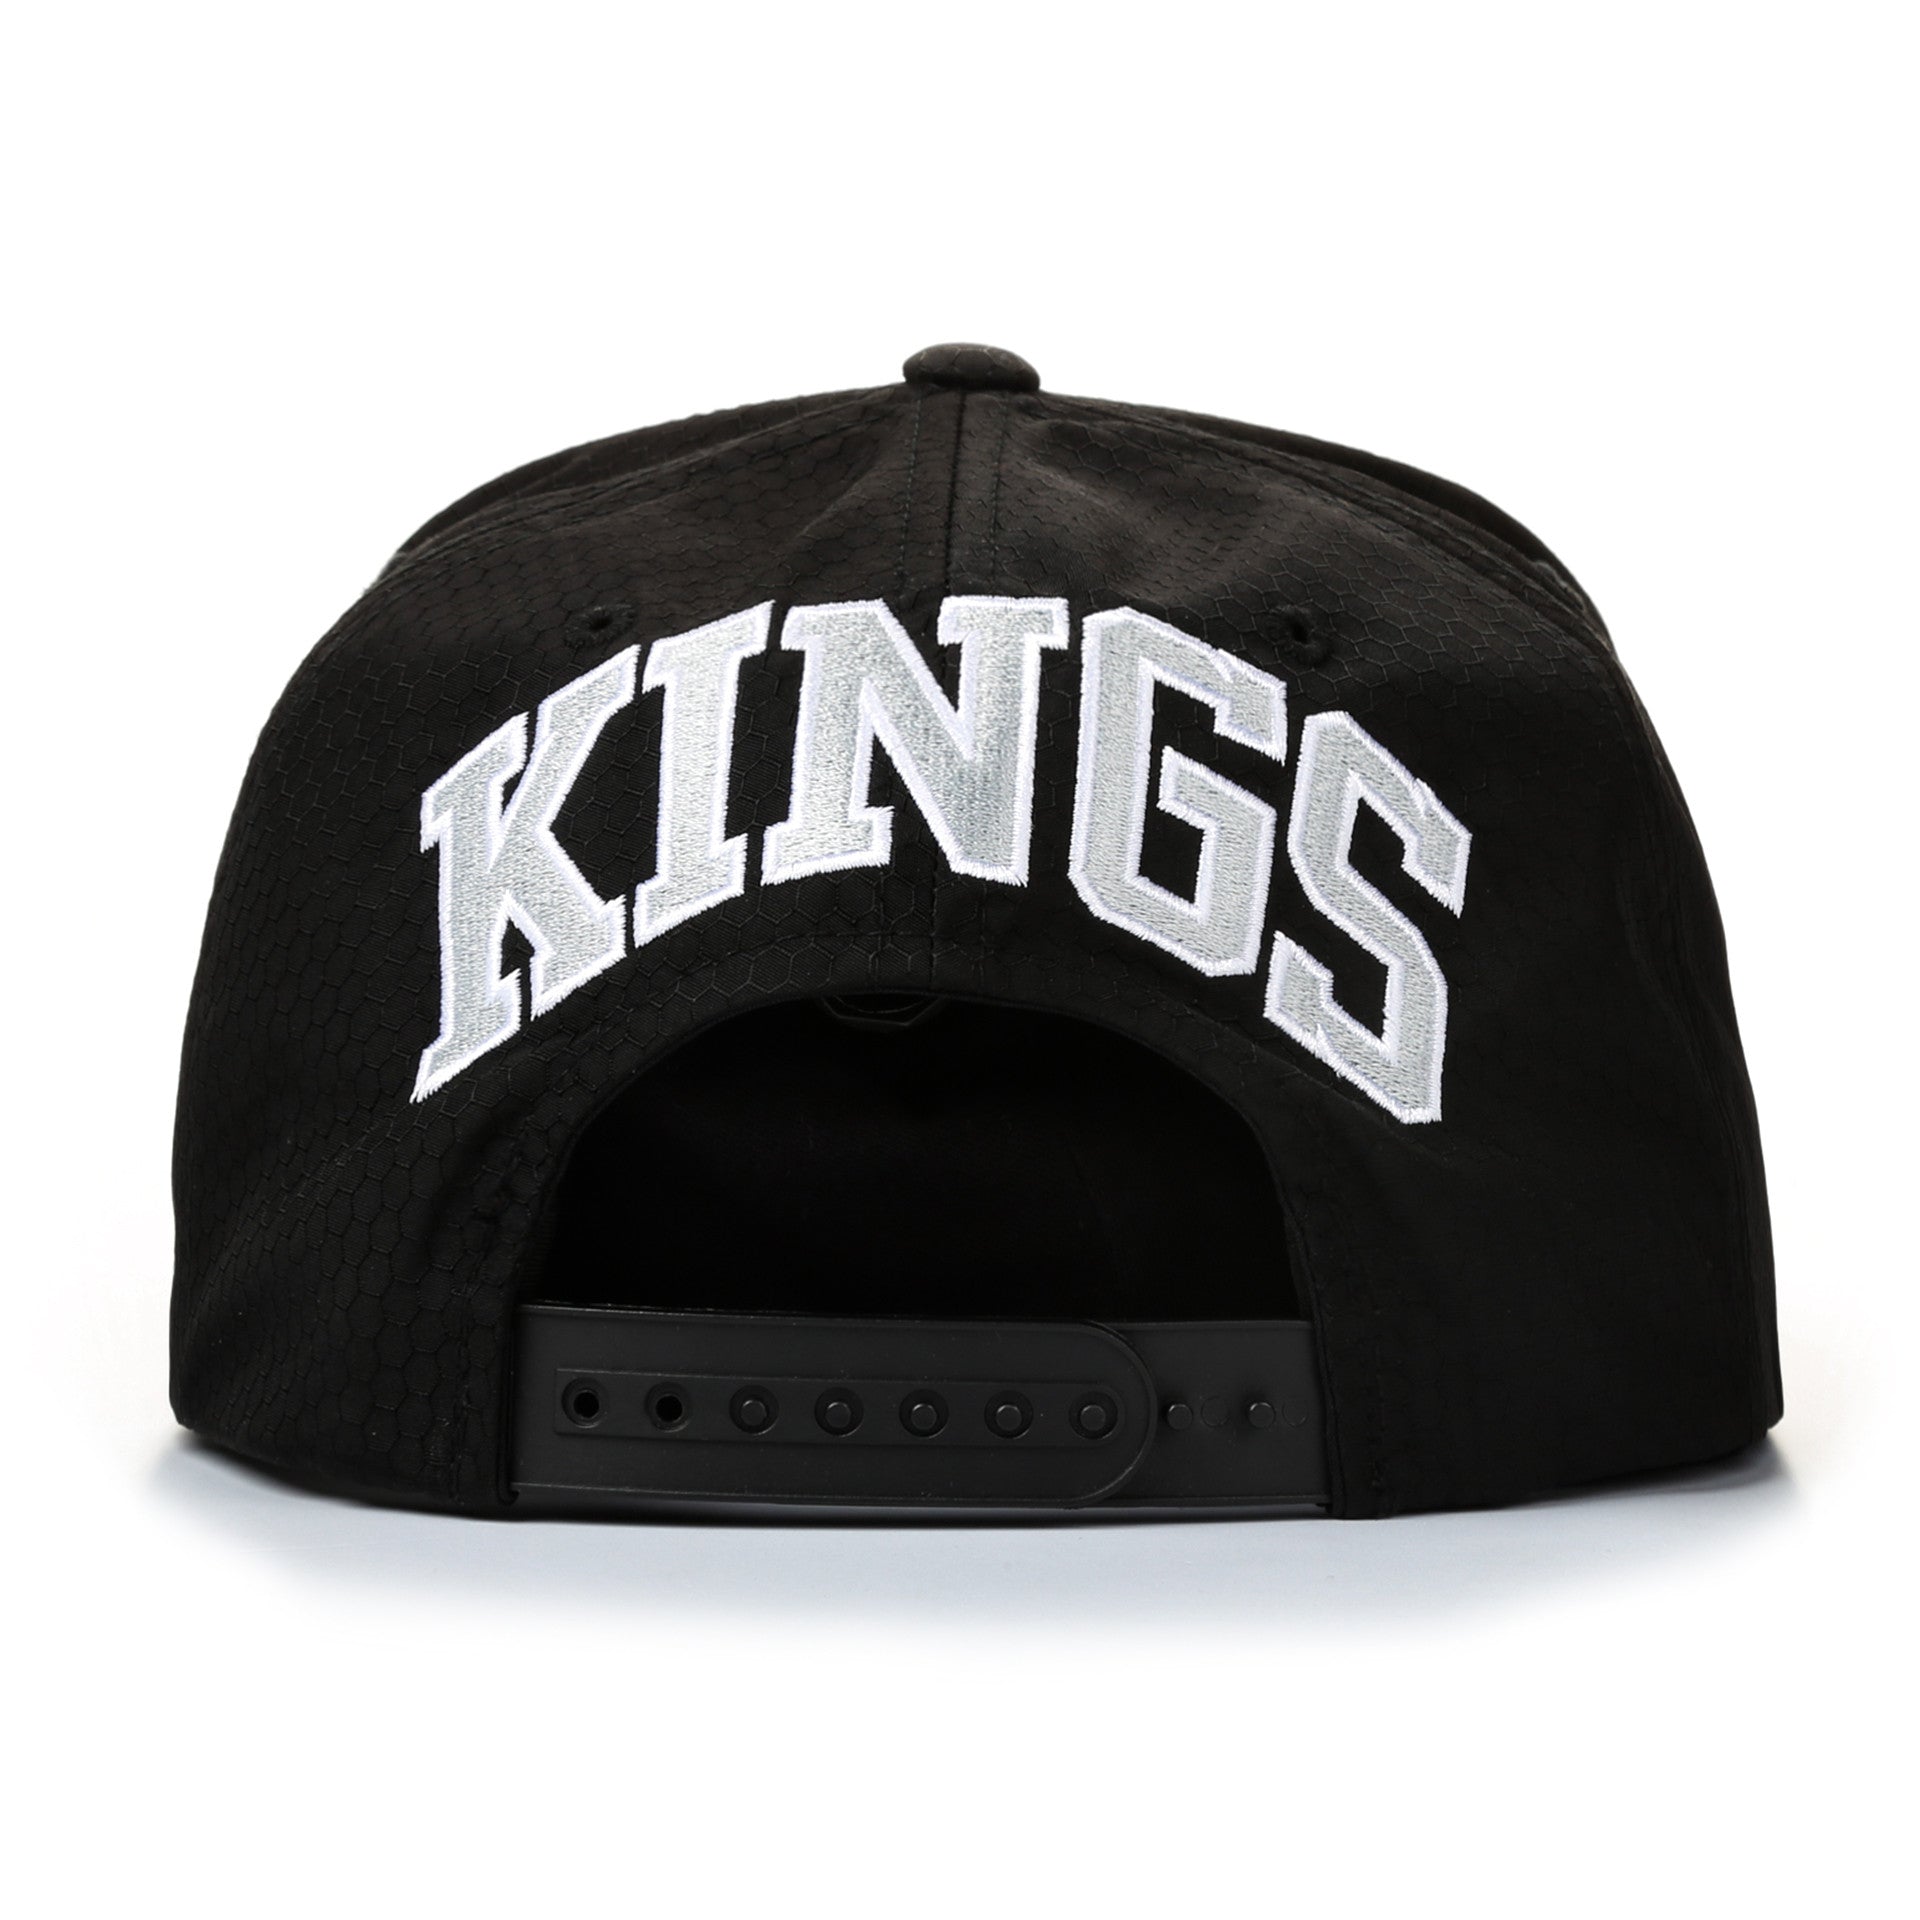 MITCHELL & NESS Los Angeles Kings Snapback Cap / NJ27Z 